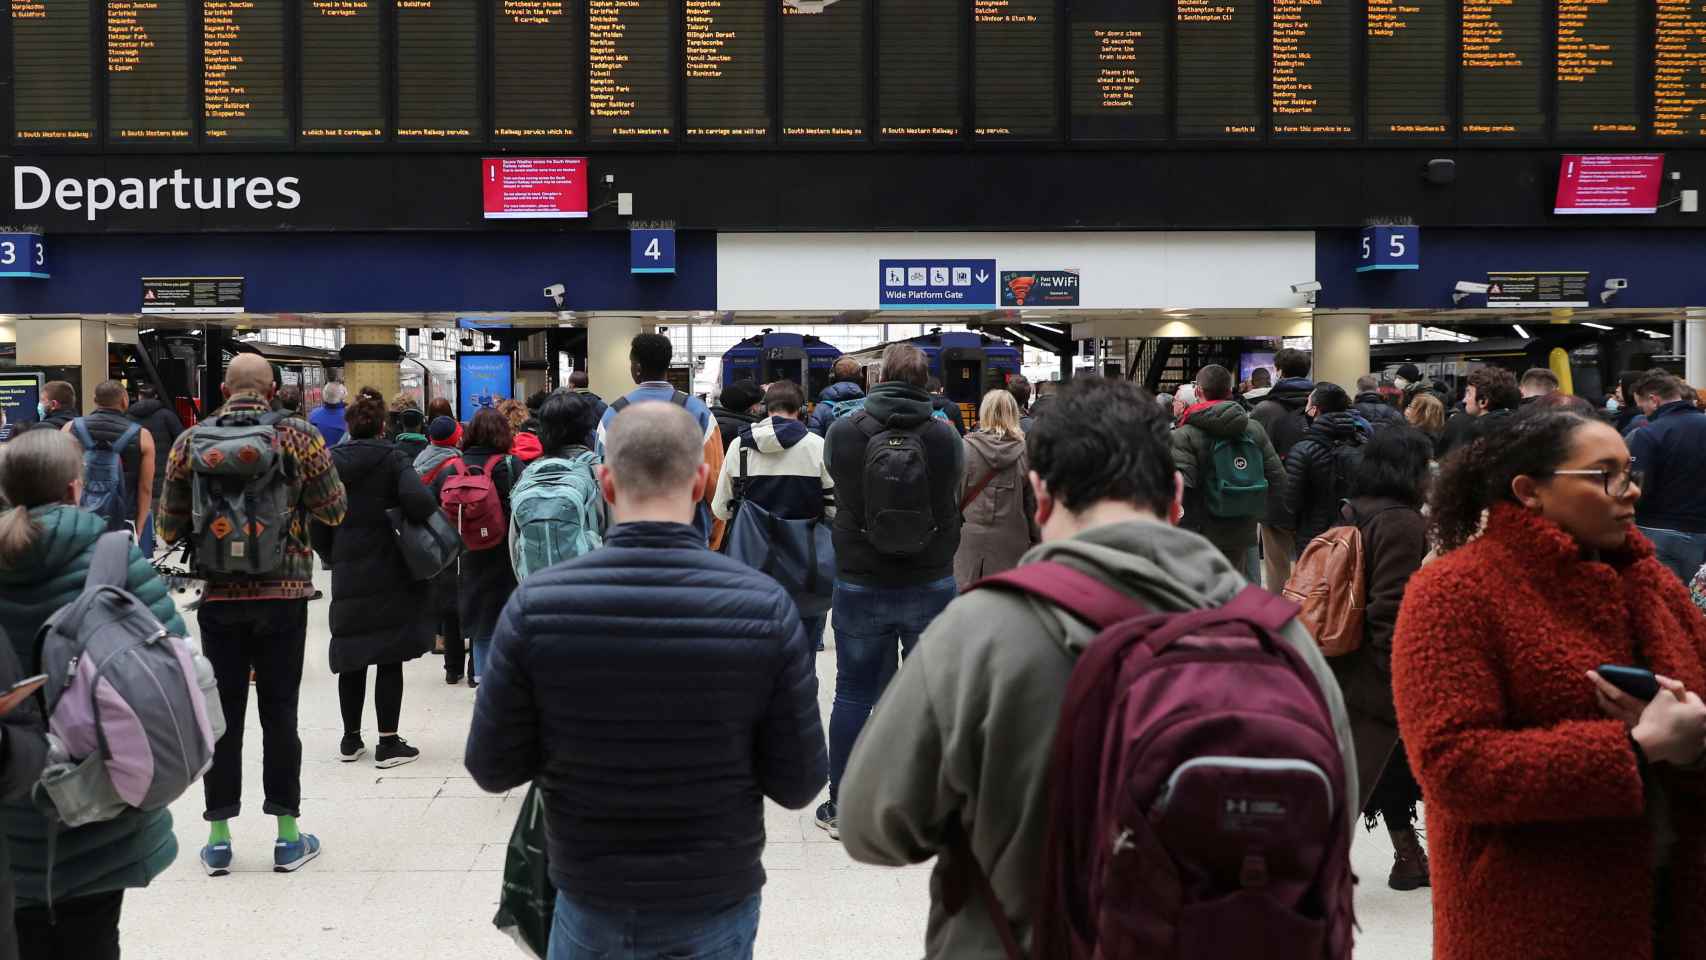 Decenas de personas observan las pantallas de la estación de Londres tras las cancelaciones por la tormenta.